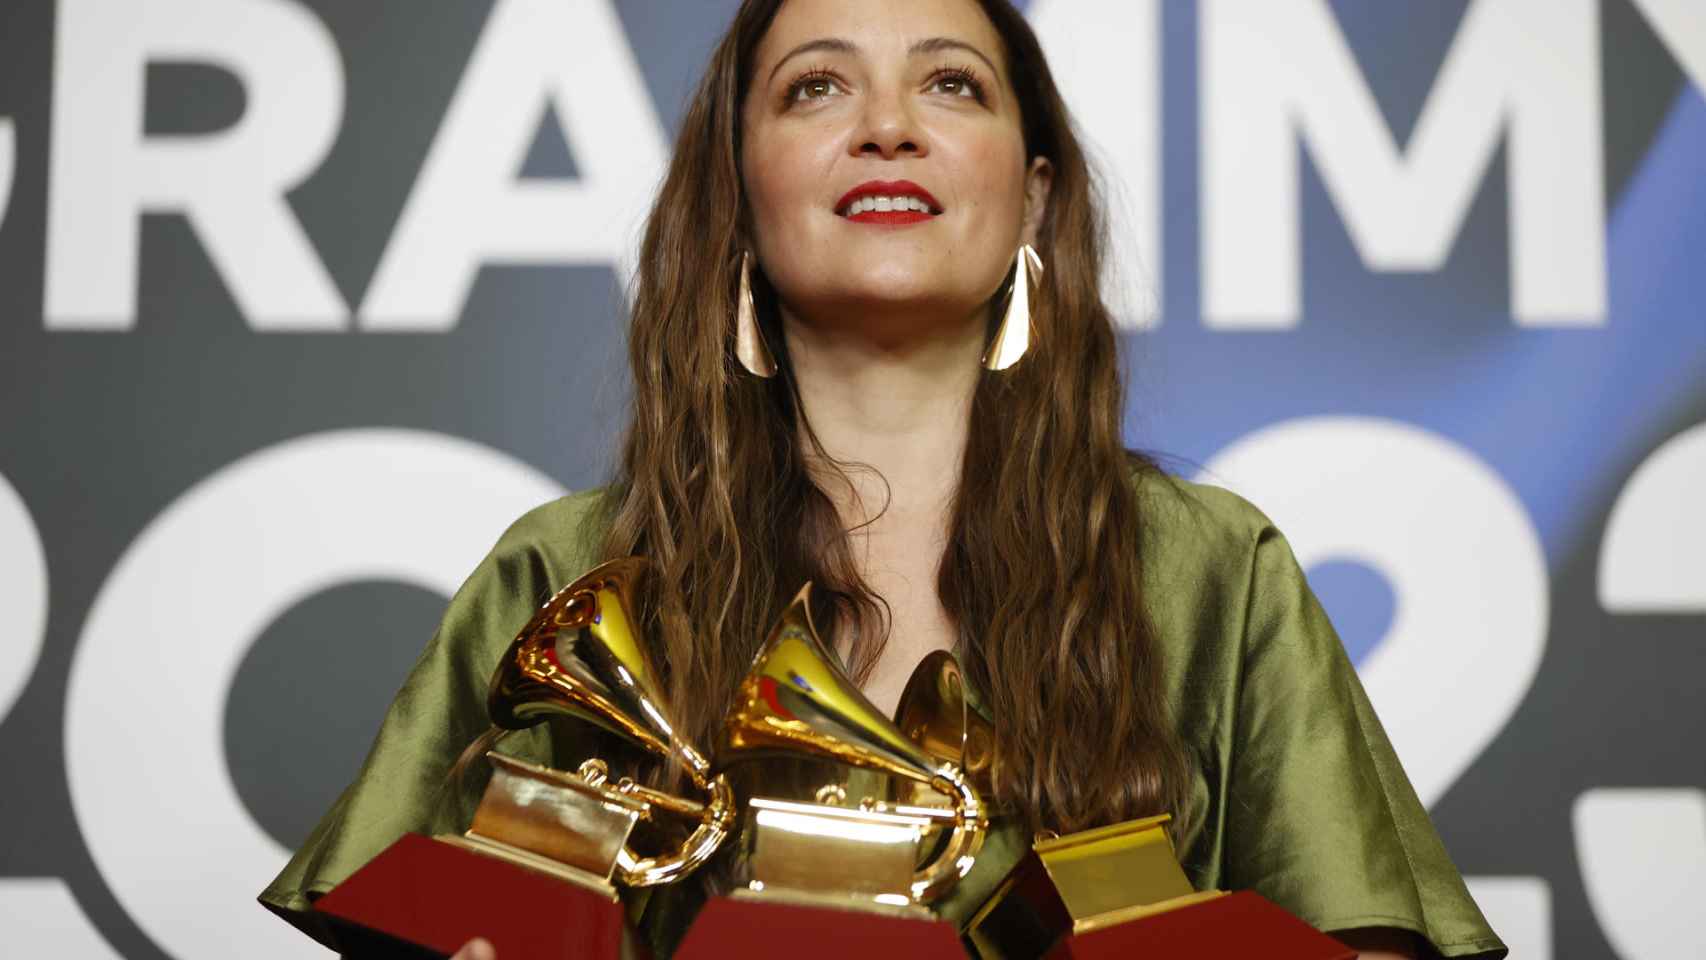 La cantante mexicana Natalia Lafourcade posa con los Grammy Latinos al ‘Mejor Álbum Cantautor’, ‘Mejor Canción Cantautor’ y Mejor Grabación del Año.